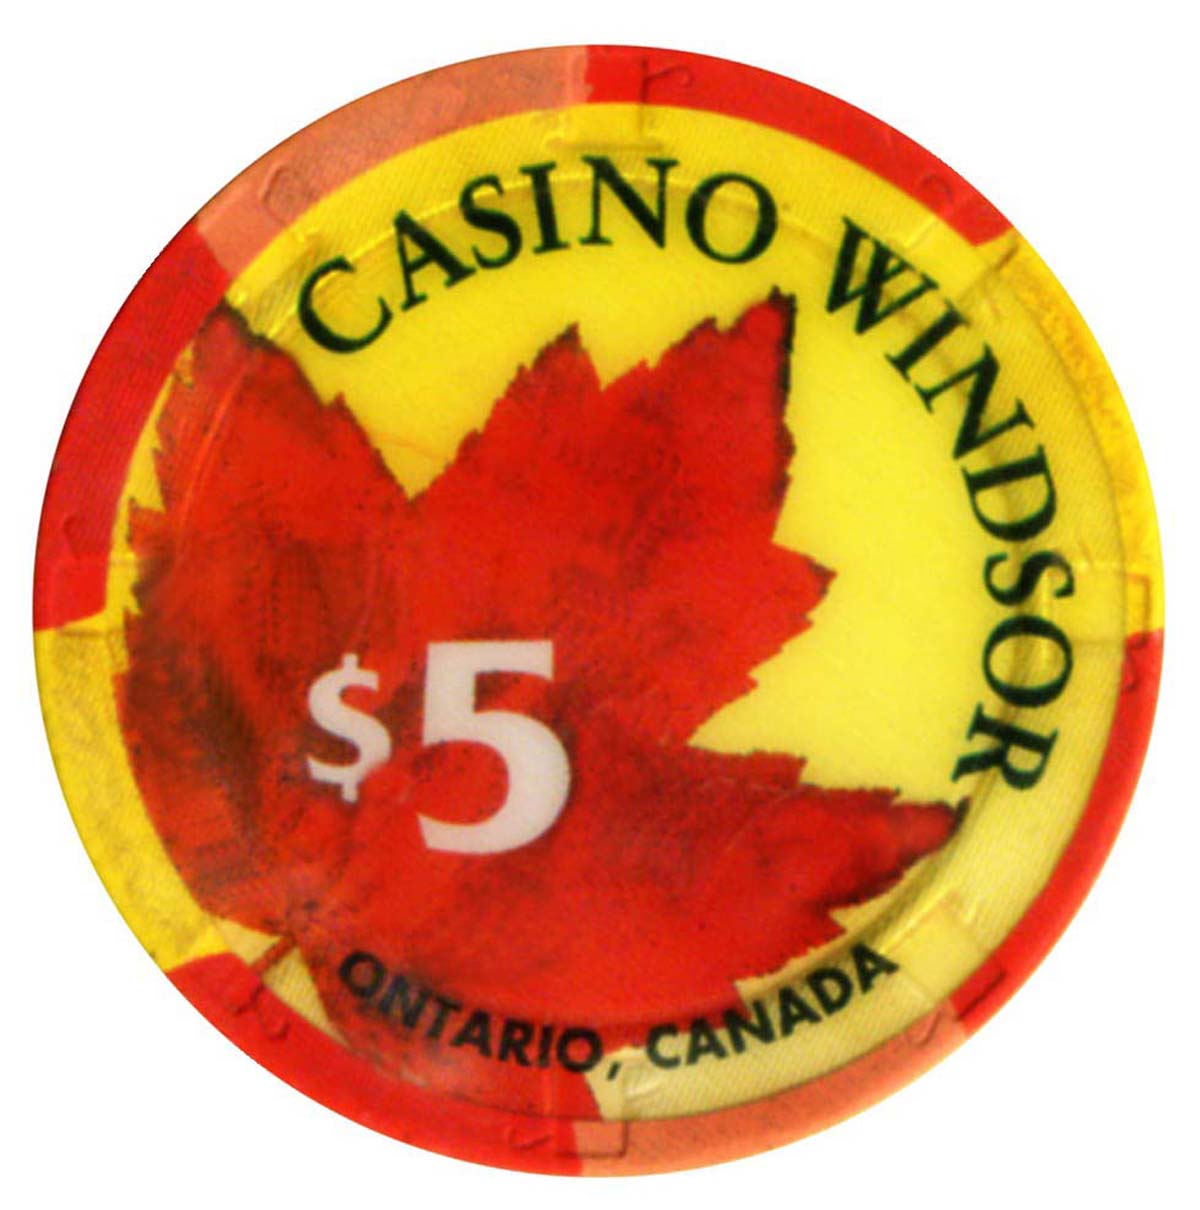 site of proposed casino in e windsor